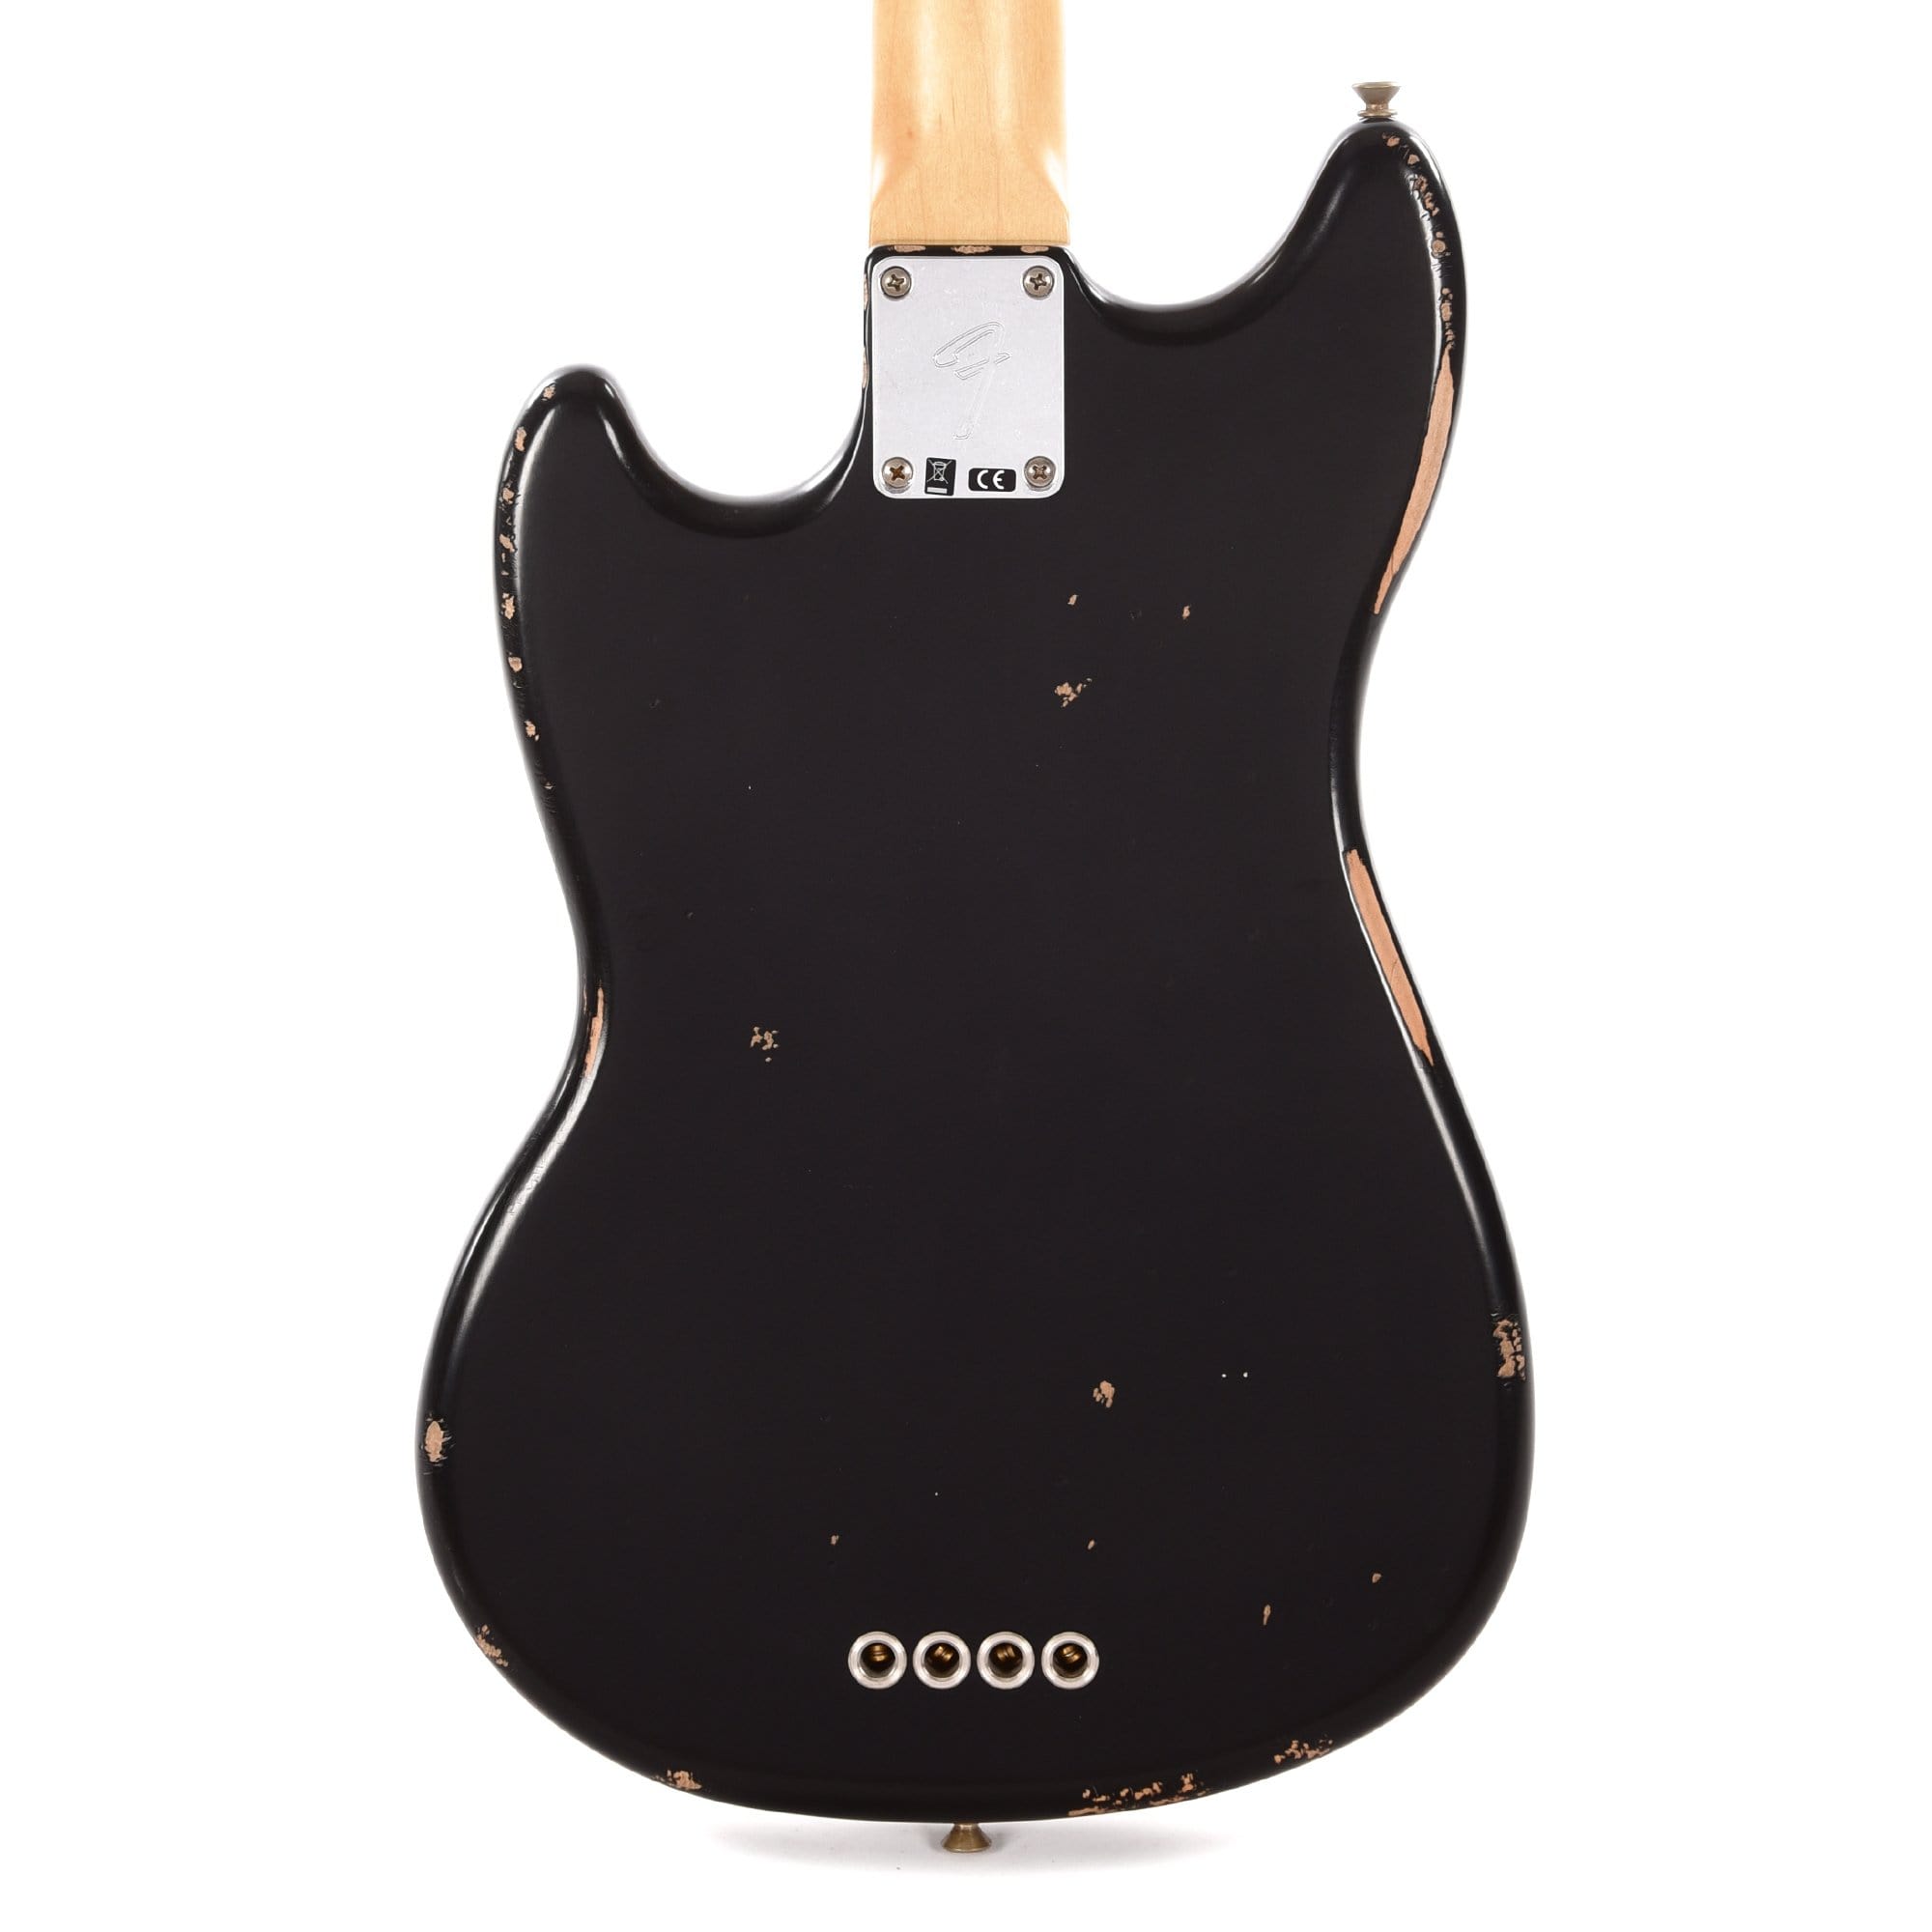 Fender Artist Justin Meldal-Johnsen Mustang Bass Black Bass Guitars / Short Scale